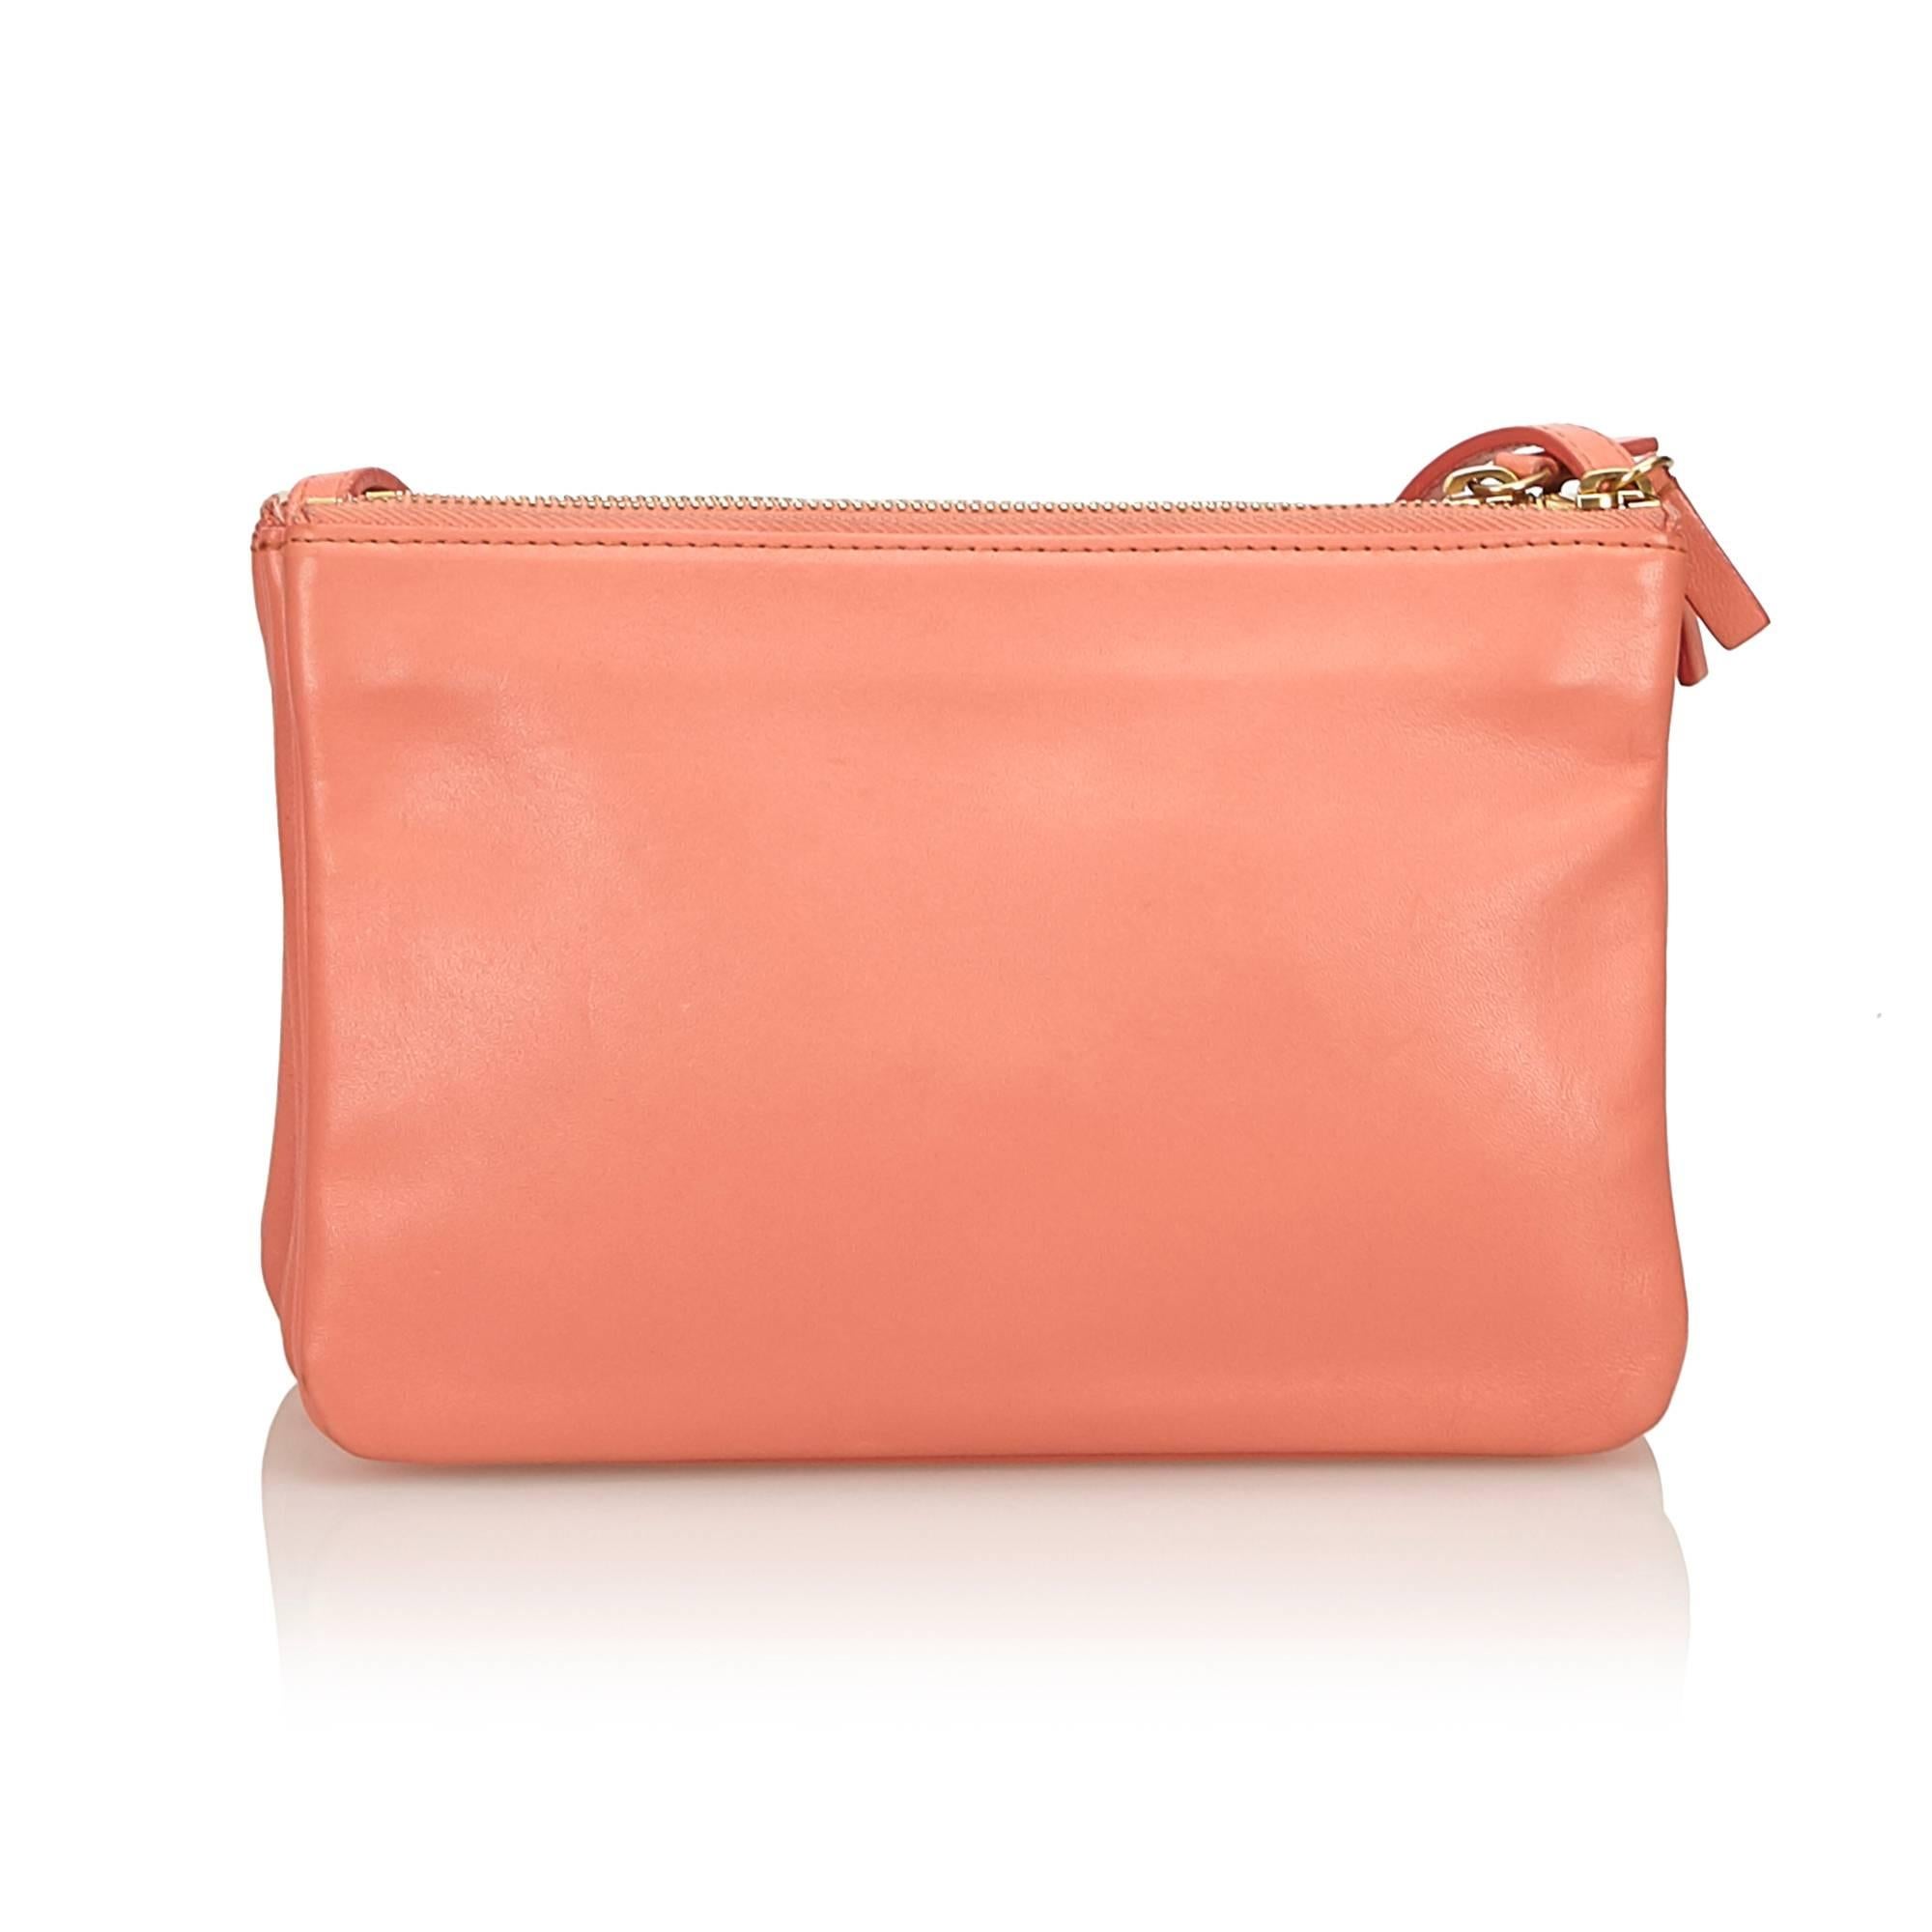 Celine Orange Small Leather Trio Bag In Good Condition For Sale In Orlando, FL